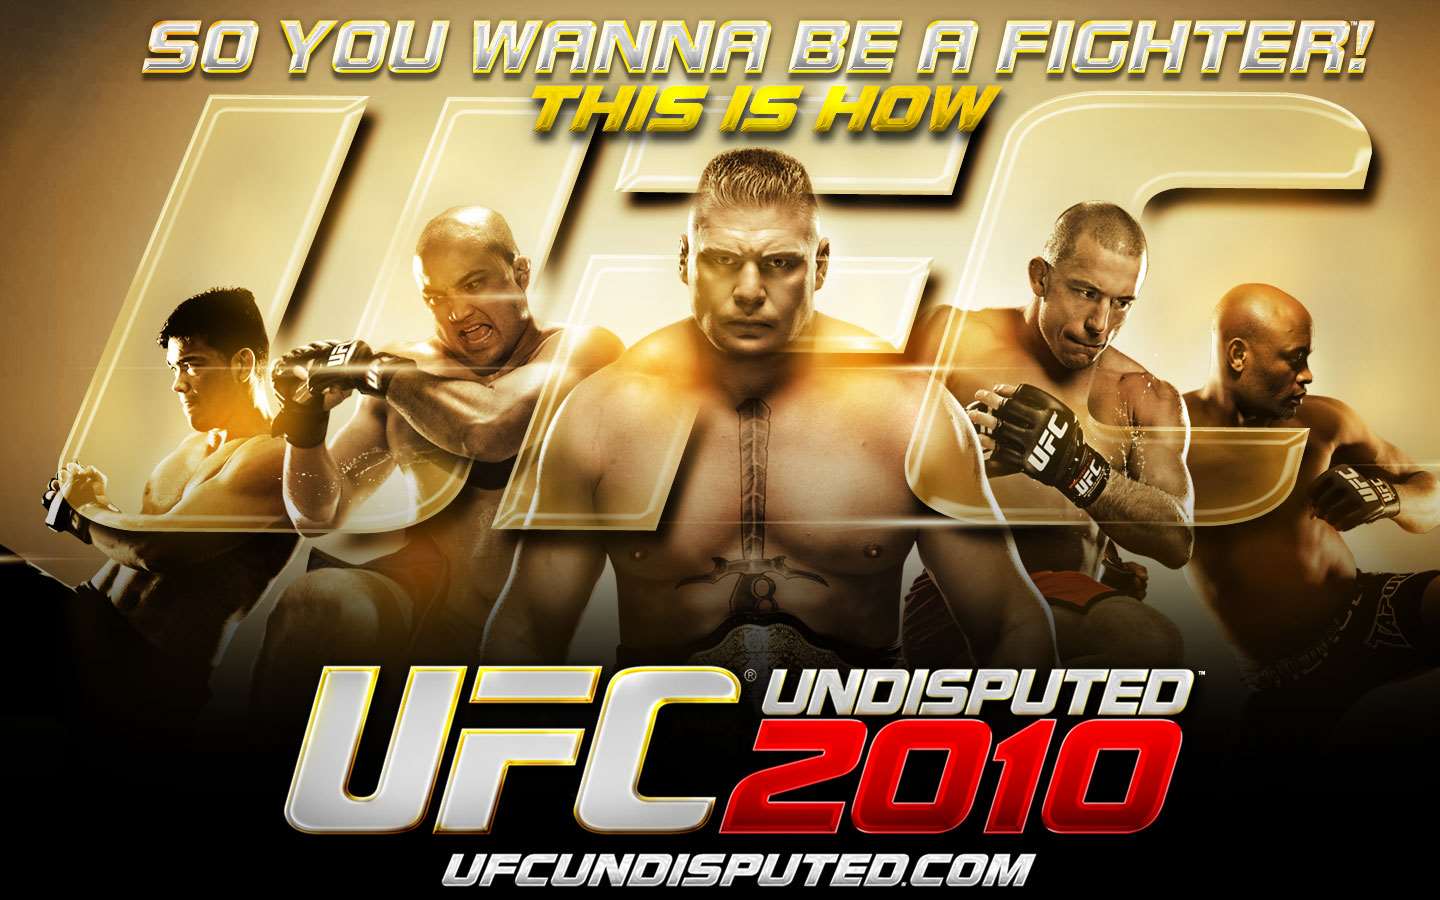 UFC Undisputed 2010 Wallpaper - 3 (1440 x 900)